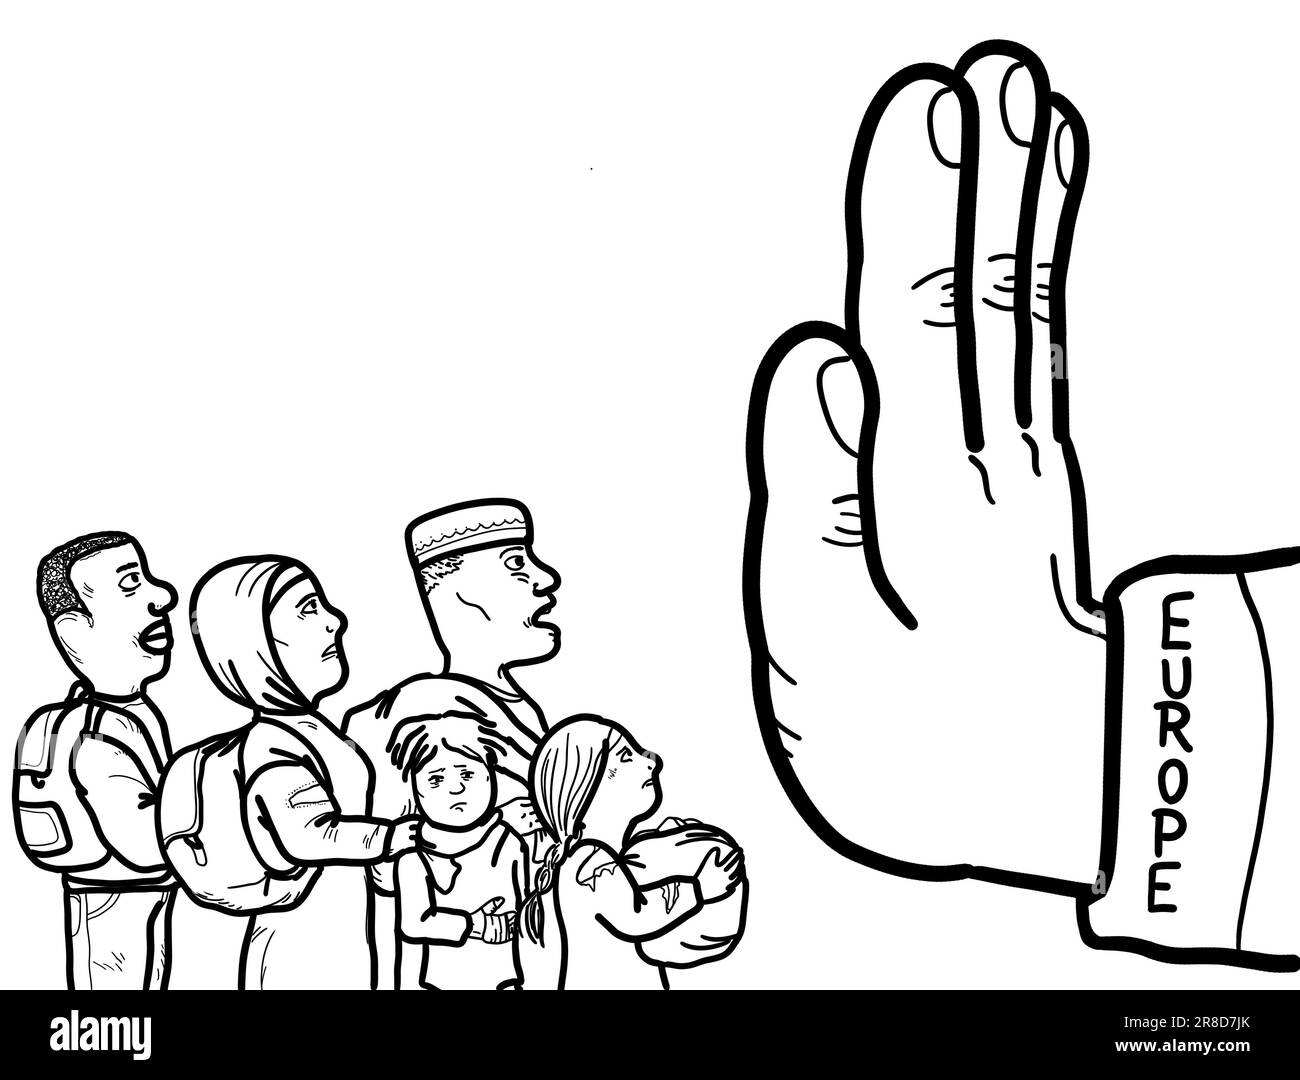 Eine Hand symbolisiert die Verhinderung der illegalen Einwanderung, der Einreise von Flüchtlingen und Asylbewerbern in das Land. Stockfoto